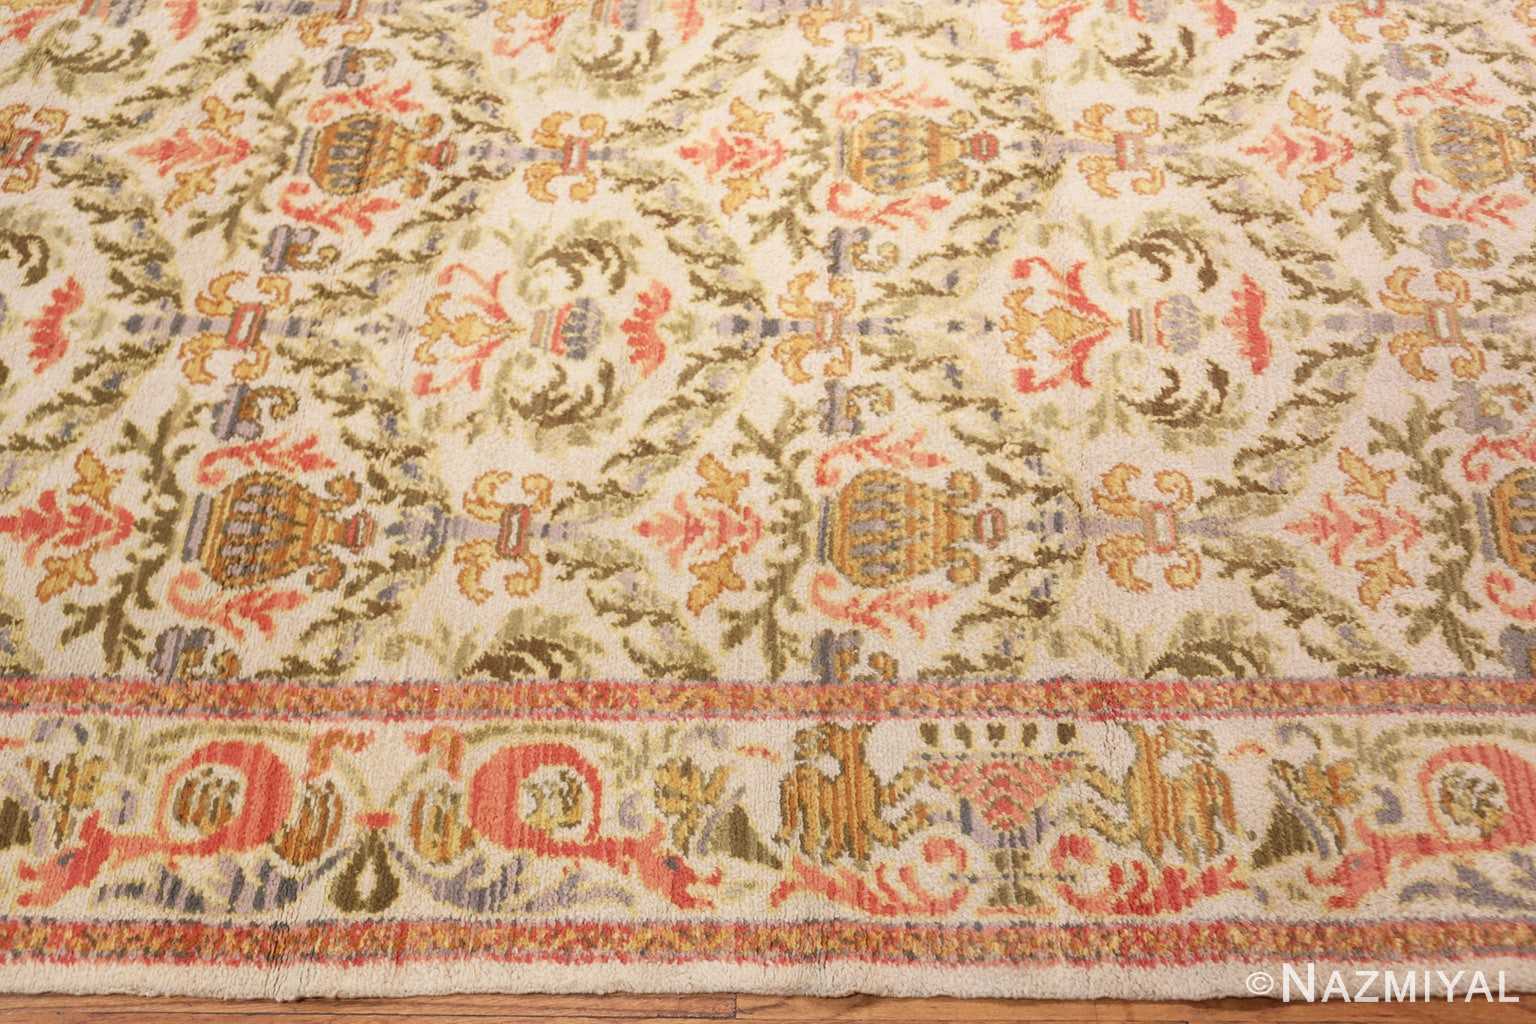 Border Decorative Large Antique Spanish rug 50581 by Nazmiyal